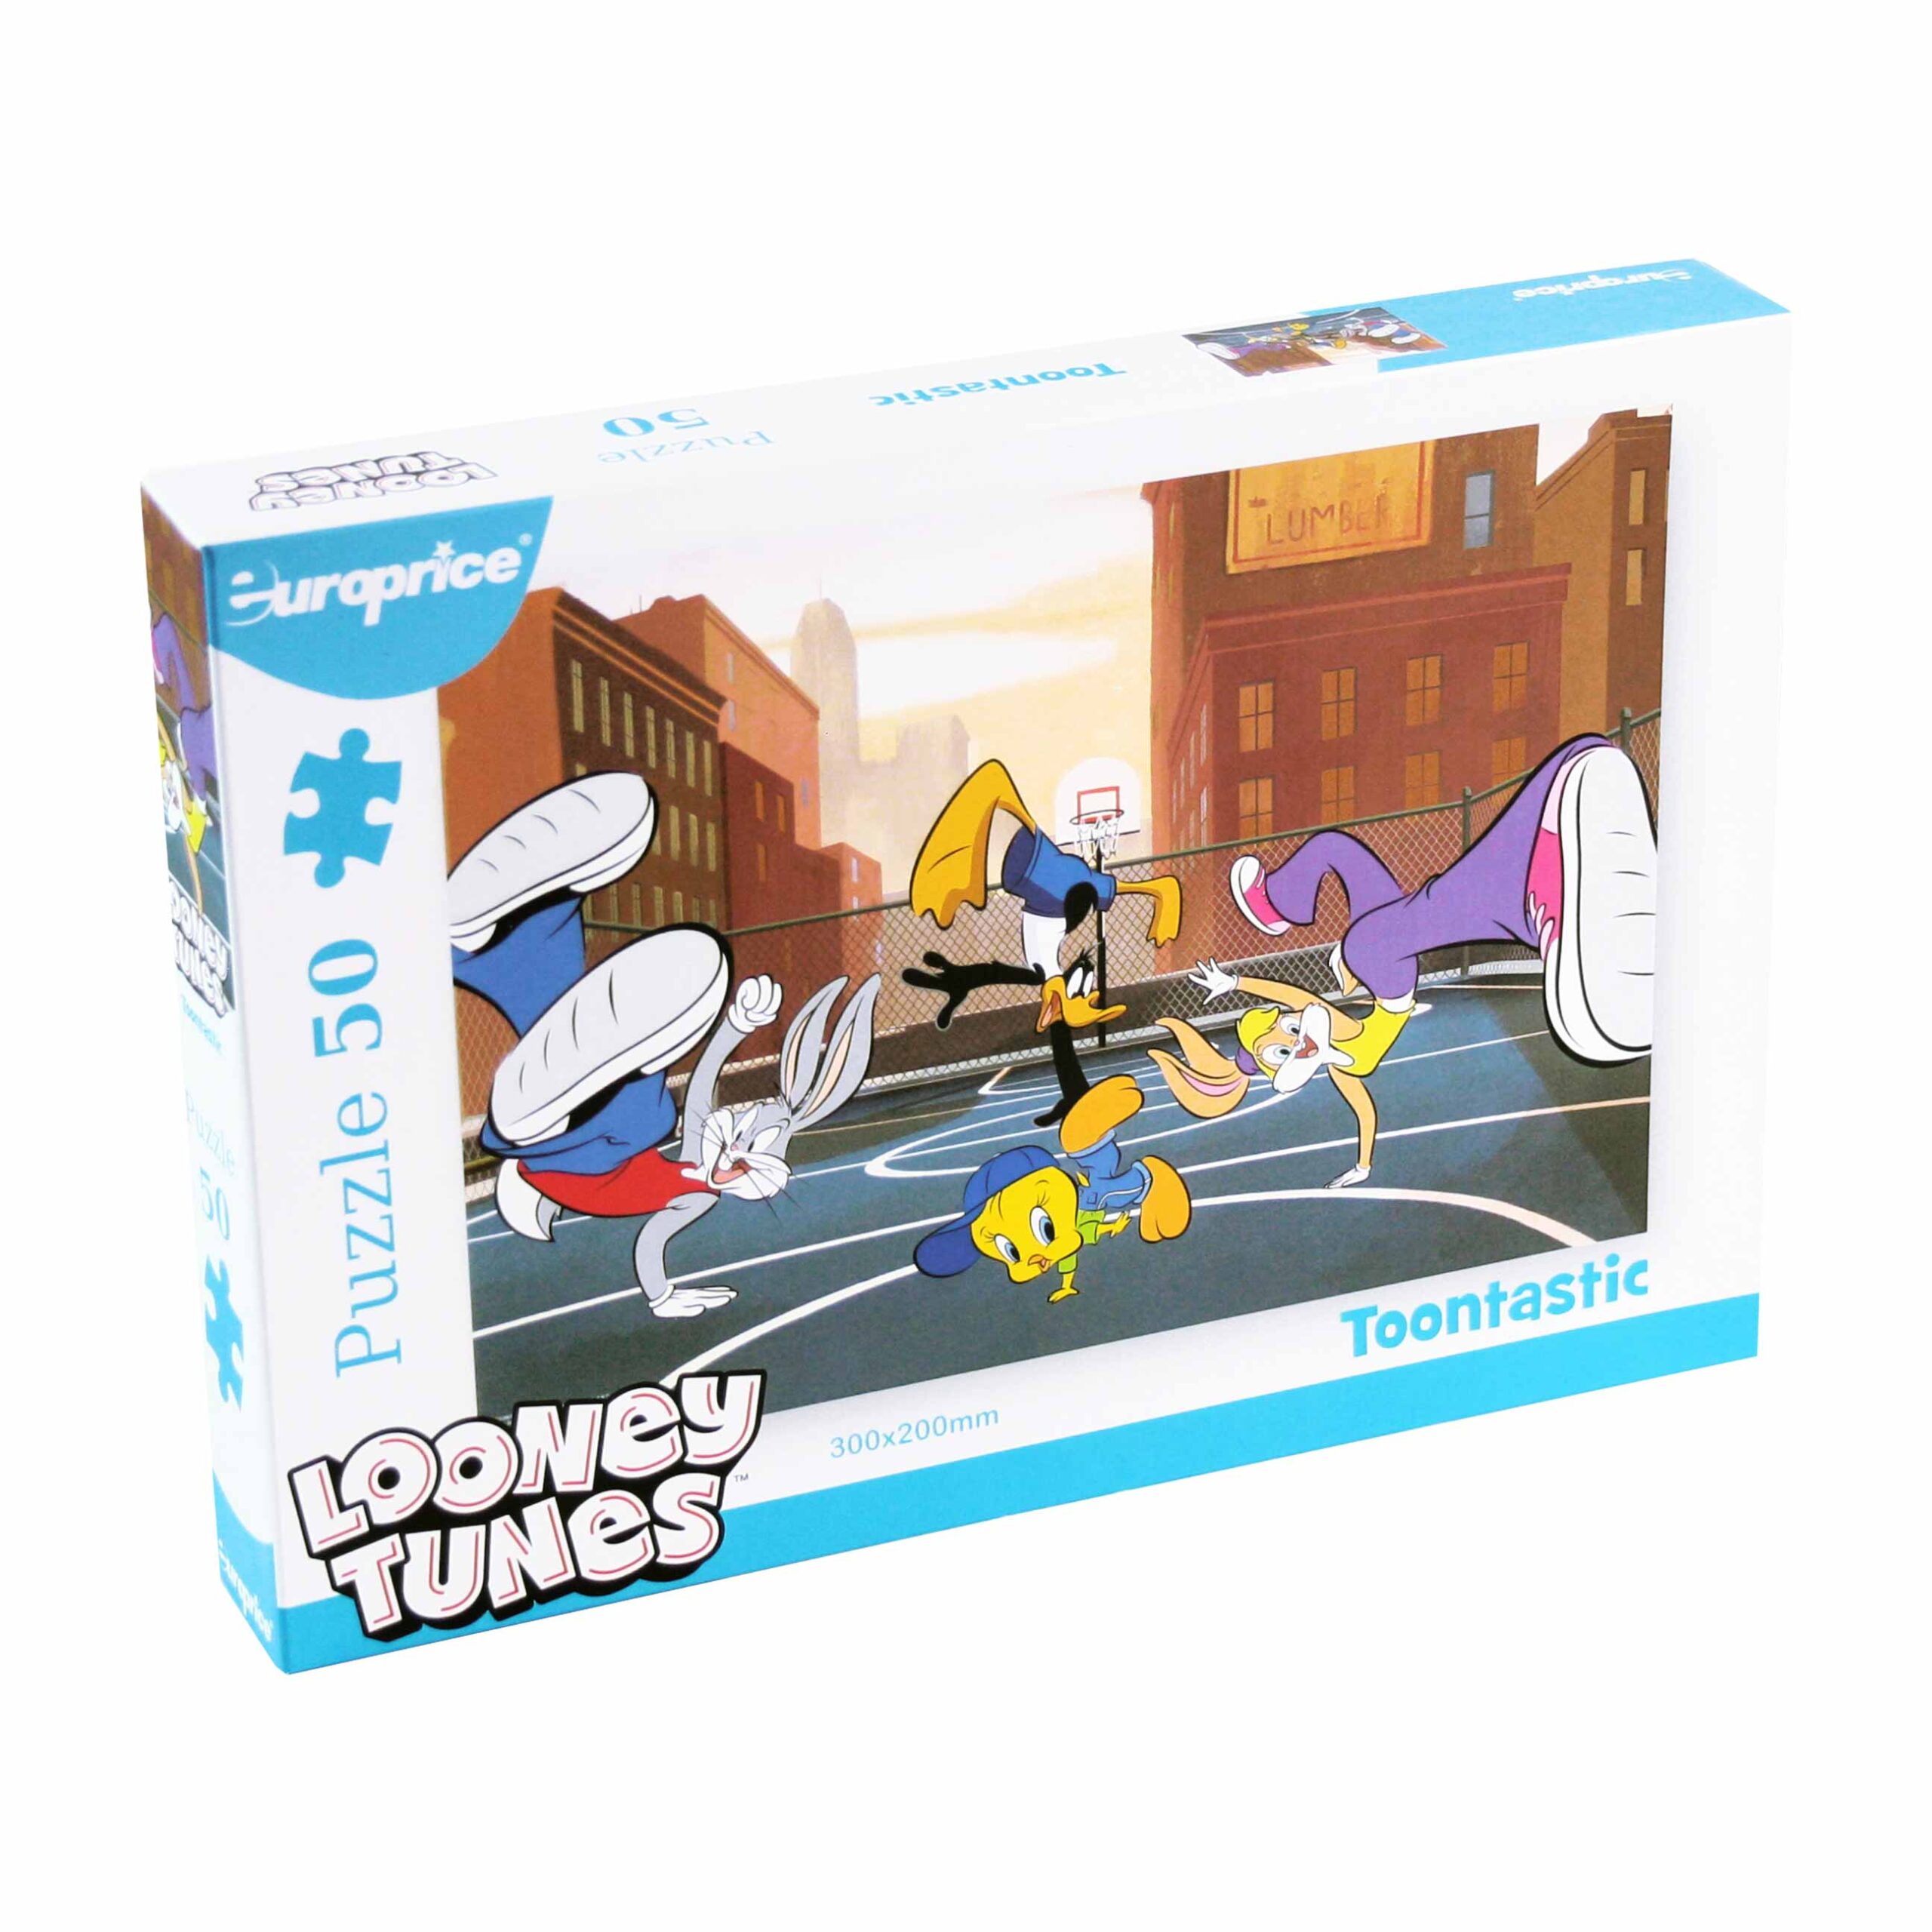 Caixa do Puzzle Looney Tunes: Toontastic. Num campo de basquetebol como cenário, podes encontrar o Bugs, a Lola, o Tweety e o Duffy a darem uma performance de hip-hop.